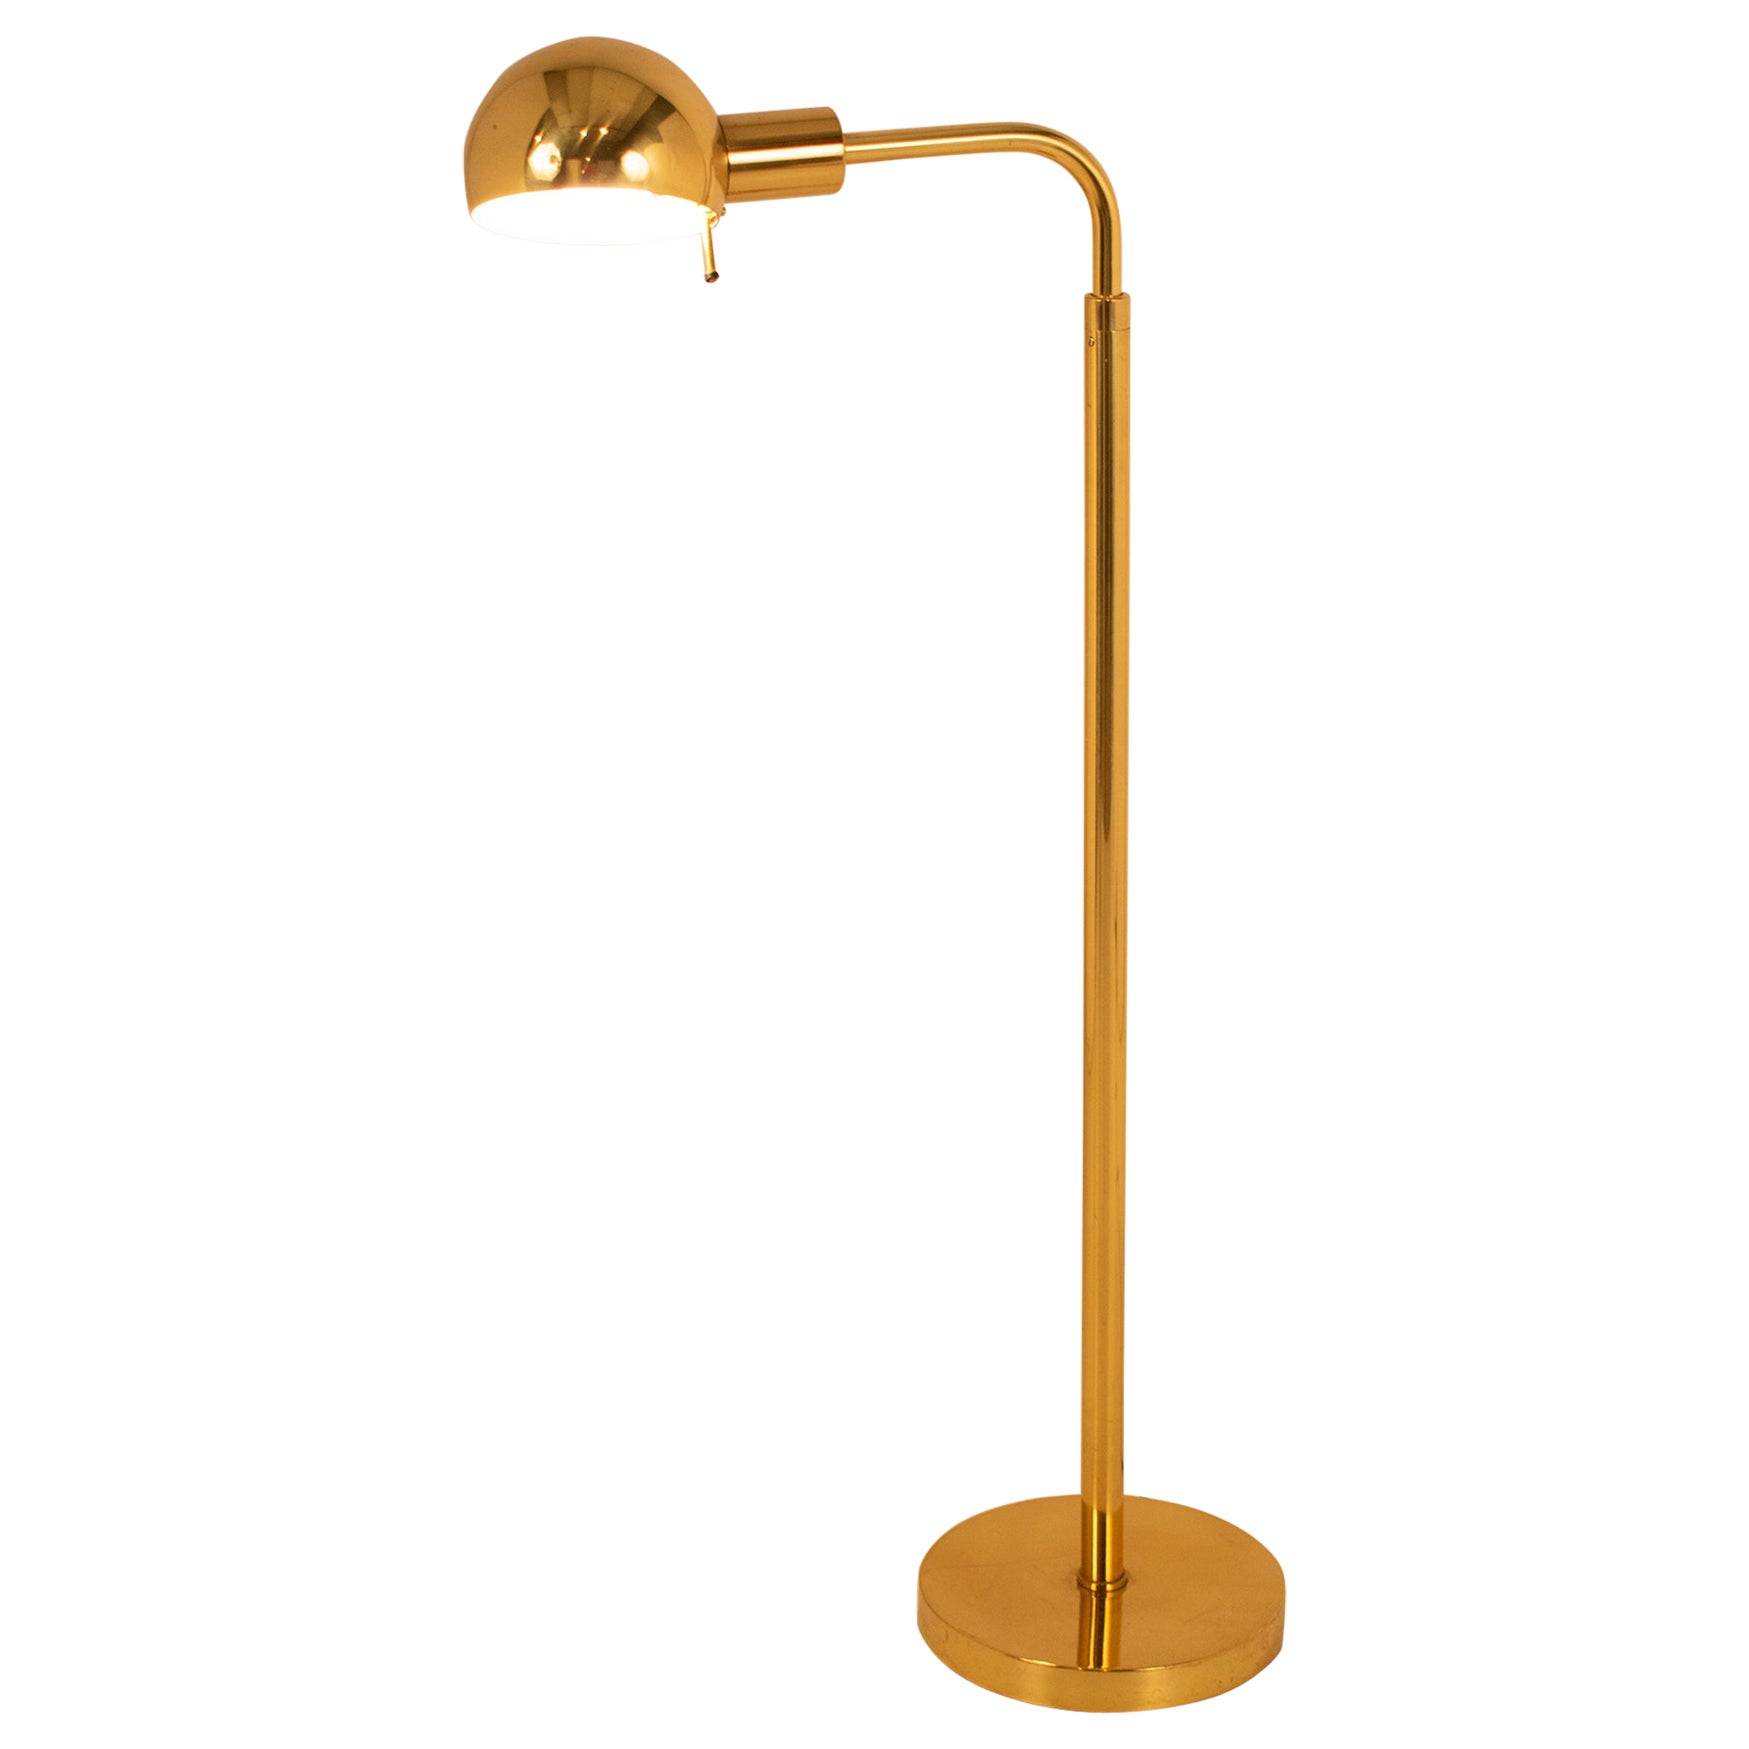 Adjustable Floor Reading Lamp, Brass, by Metalarte for Hansen, Spain, 1960s